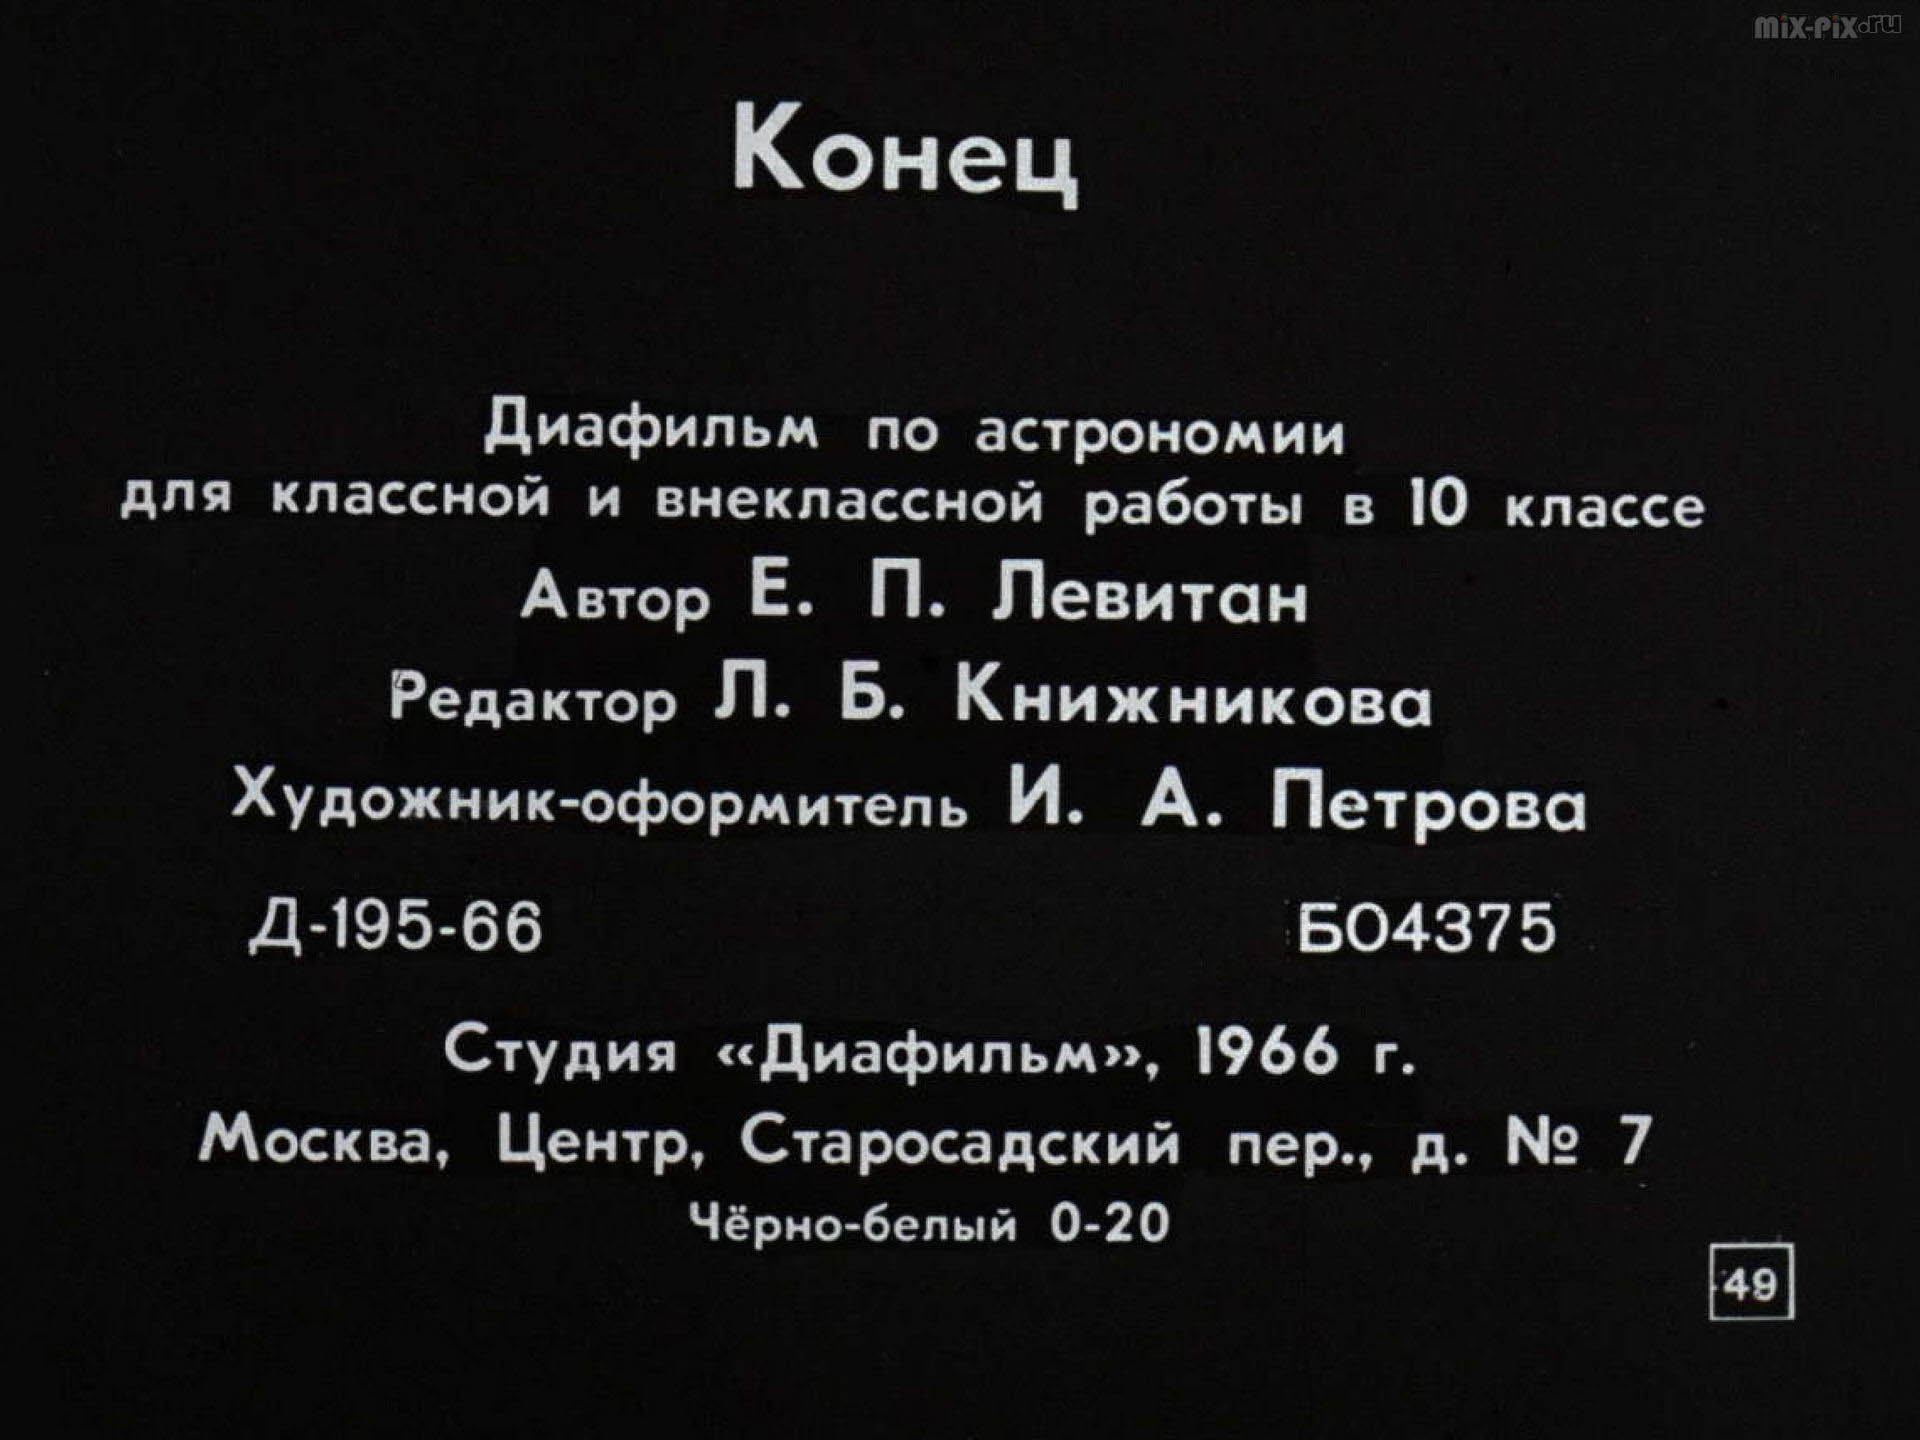 051_DOSTIZENIY-SSSR.jpg